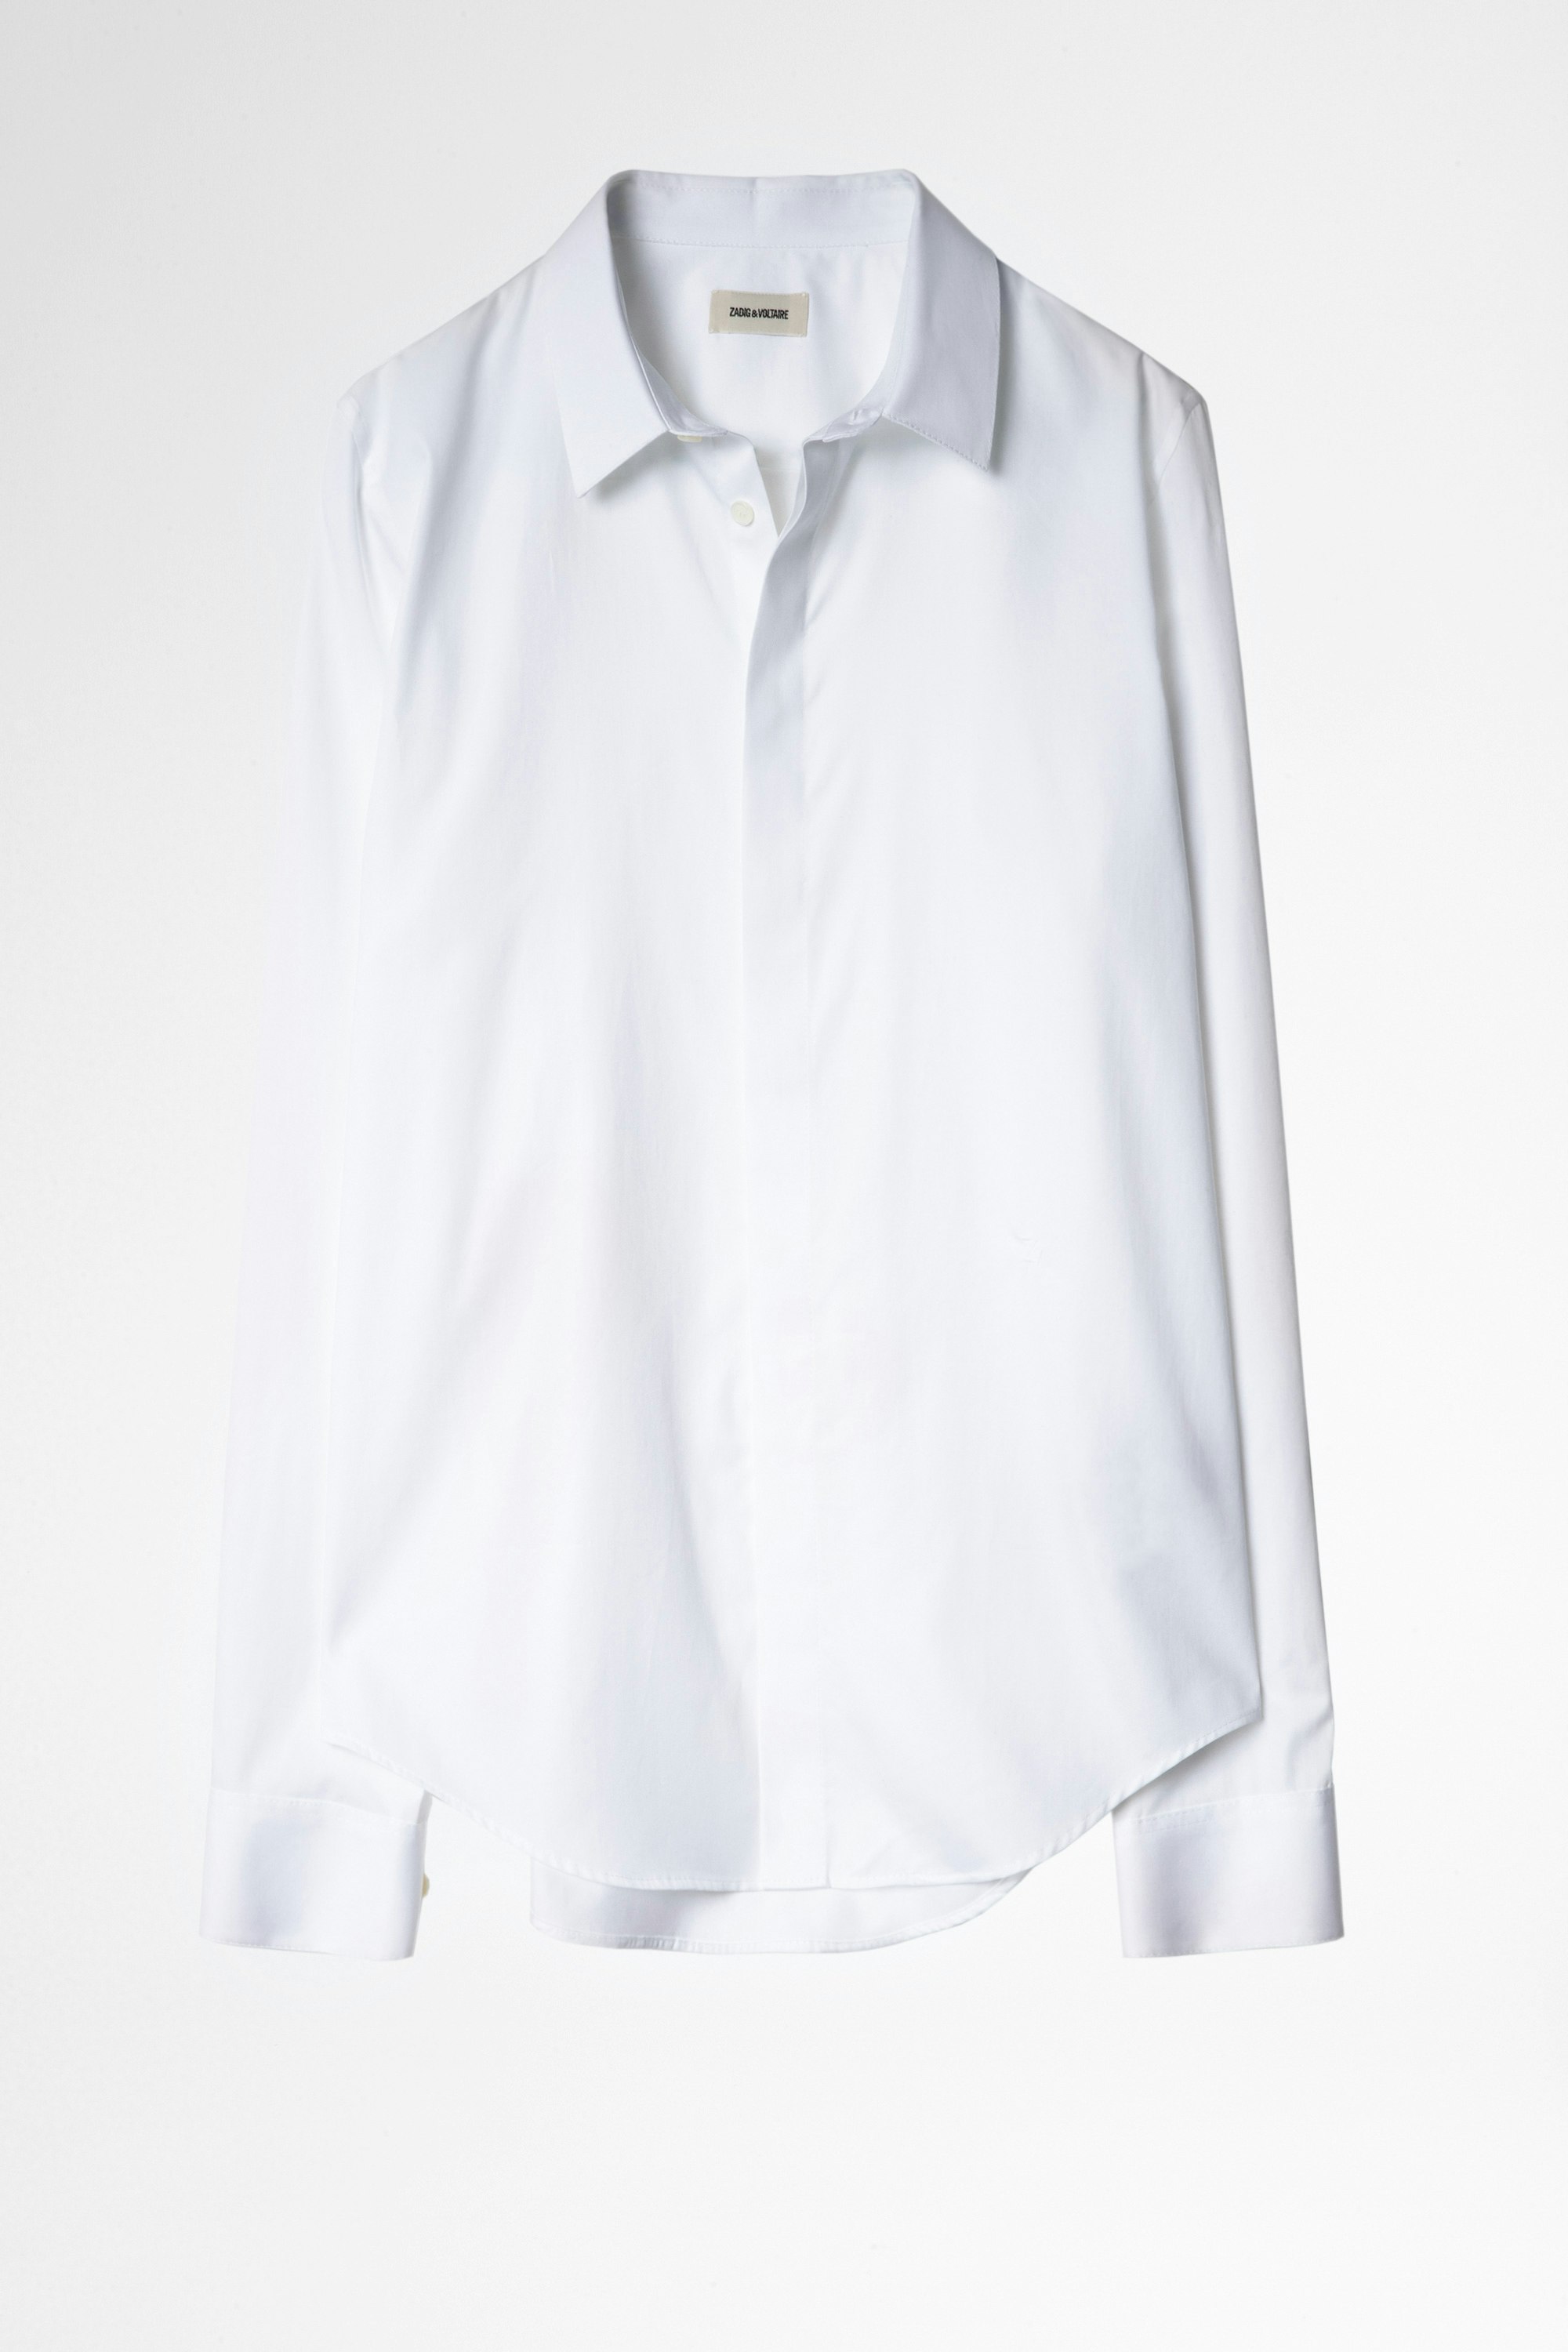 Camisa Sydney Pop Camisa blanca de hombre de algodón bordada